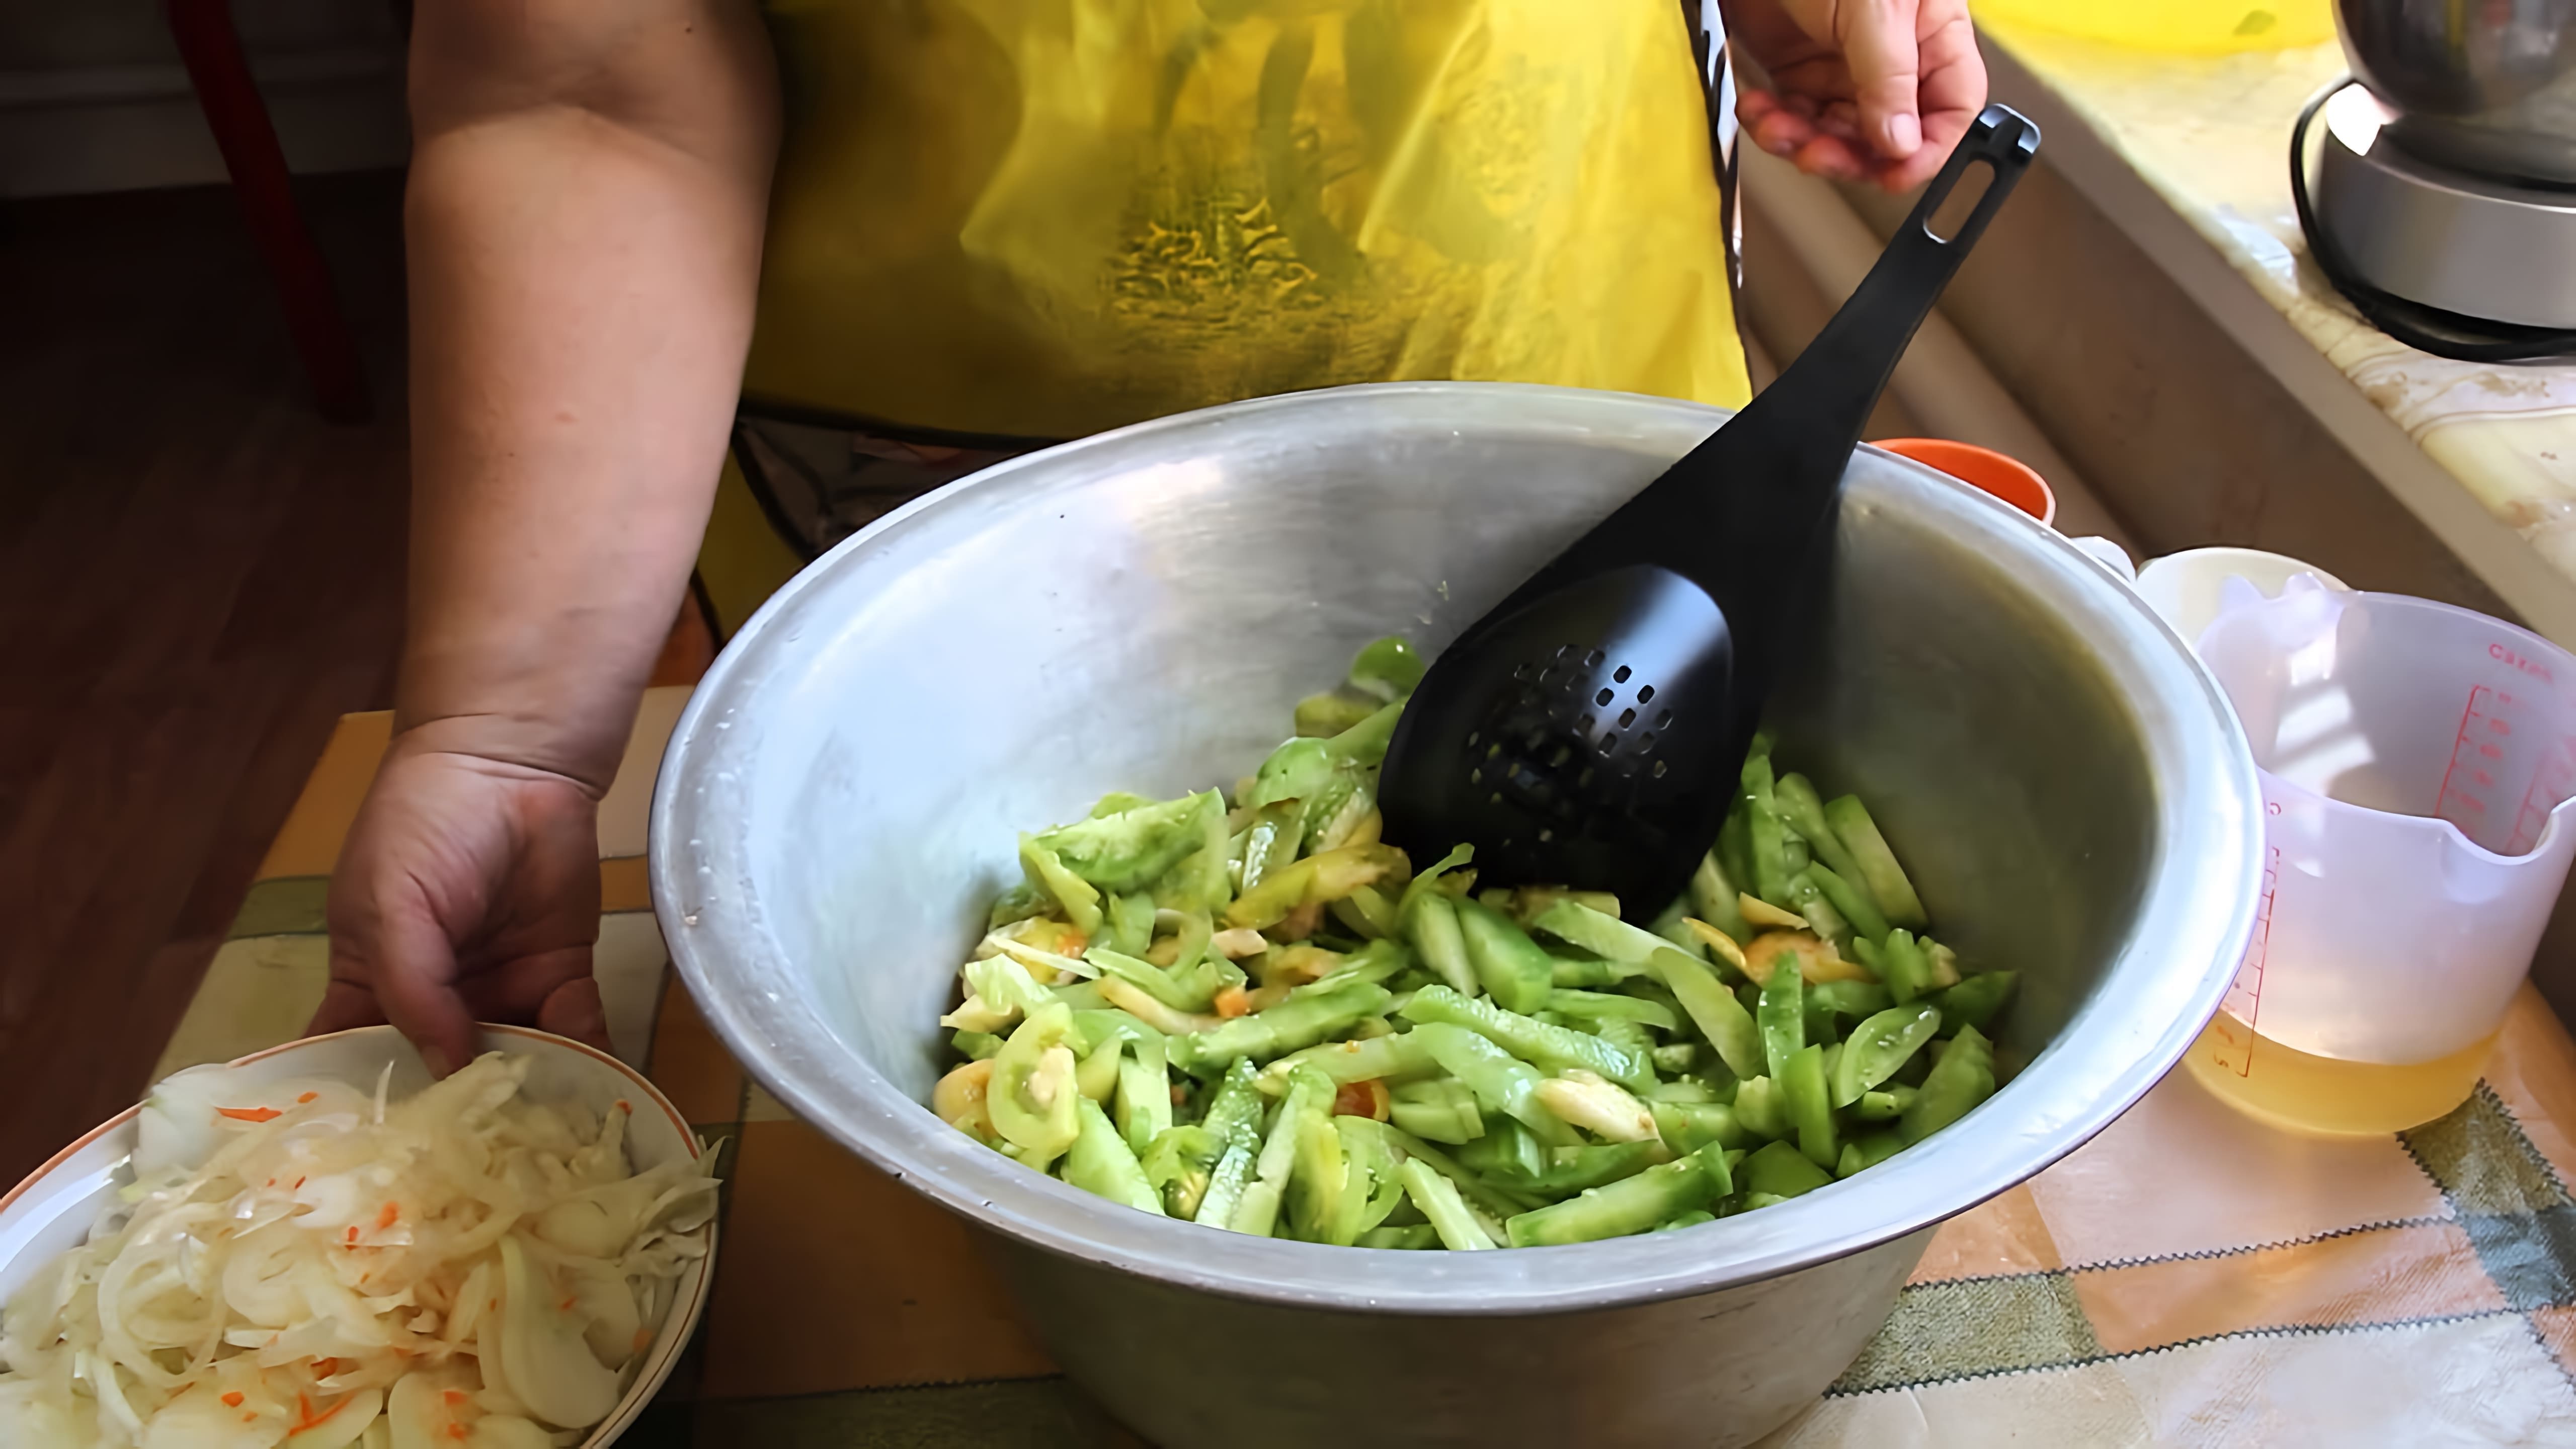 В этом видео демонстрируется рецепт приготовления салата из зеленых помидоров